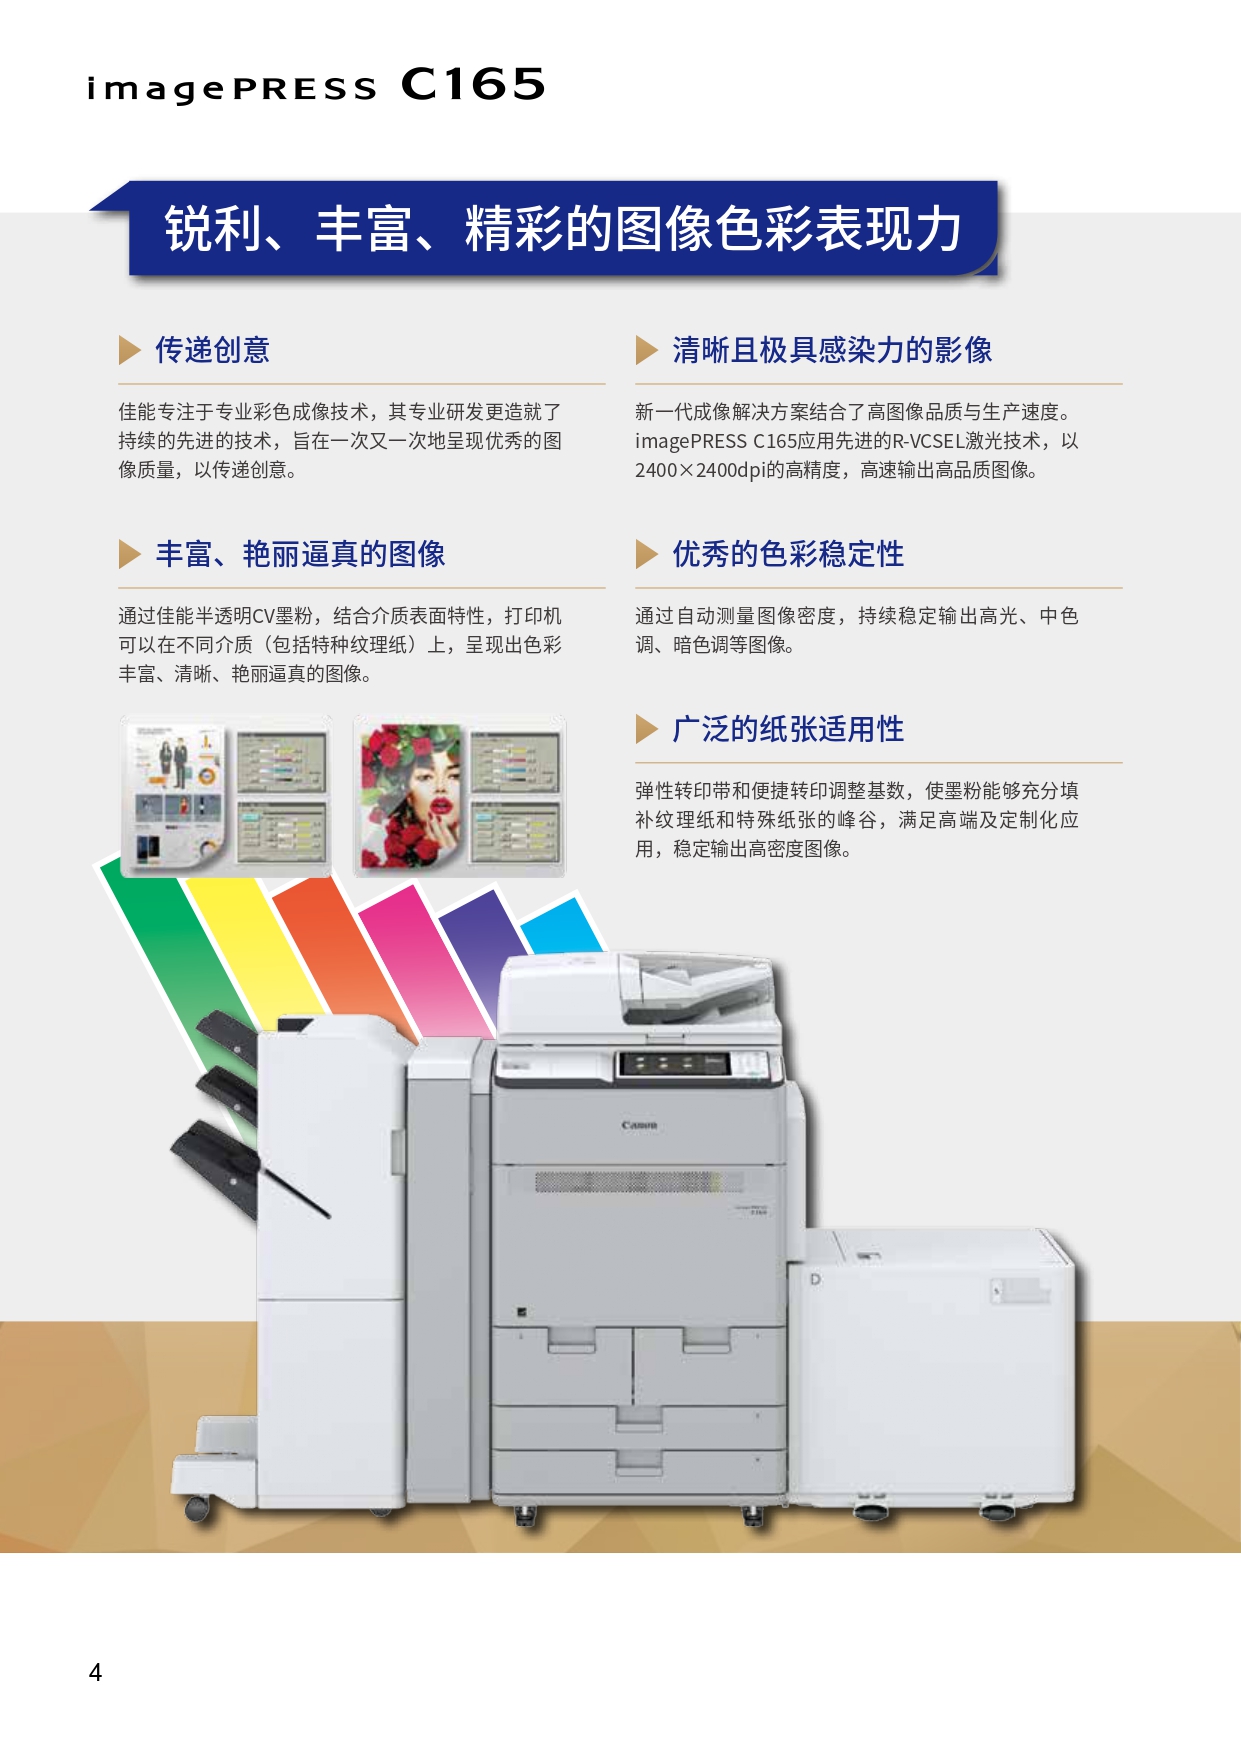 彩色数码印刷系统 imagePRESS C165 彩页_page-0004.jpg